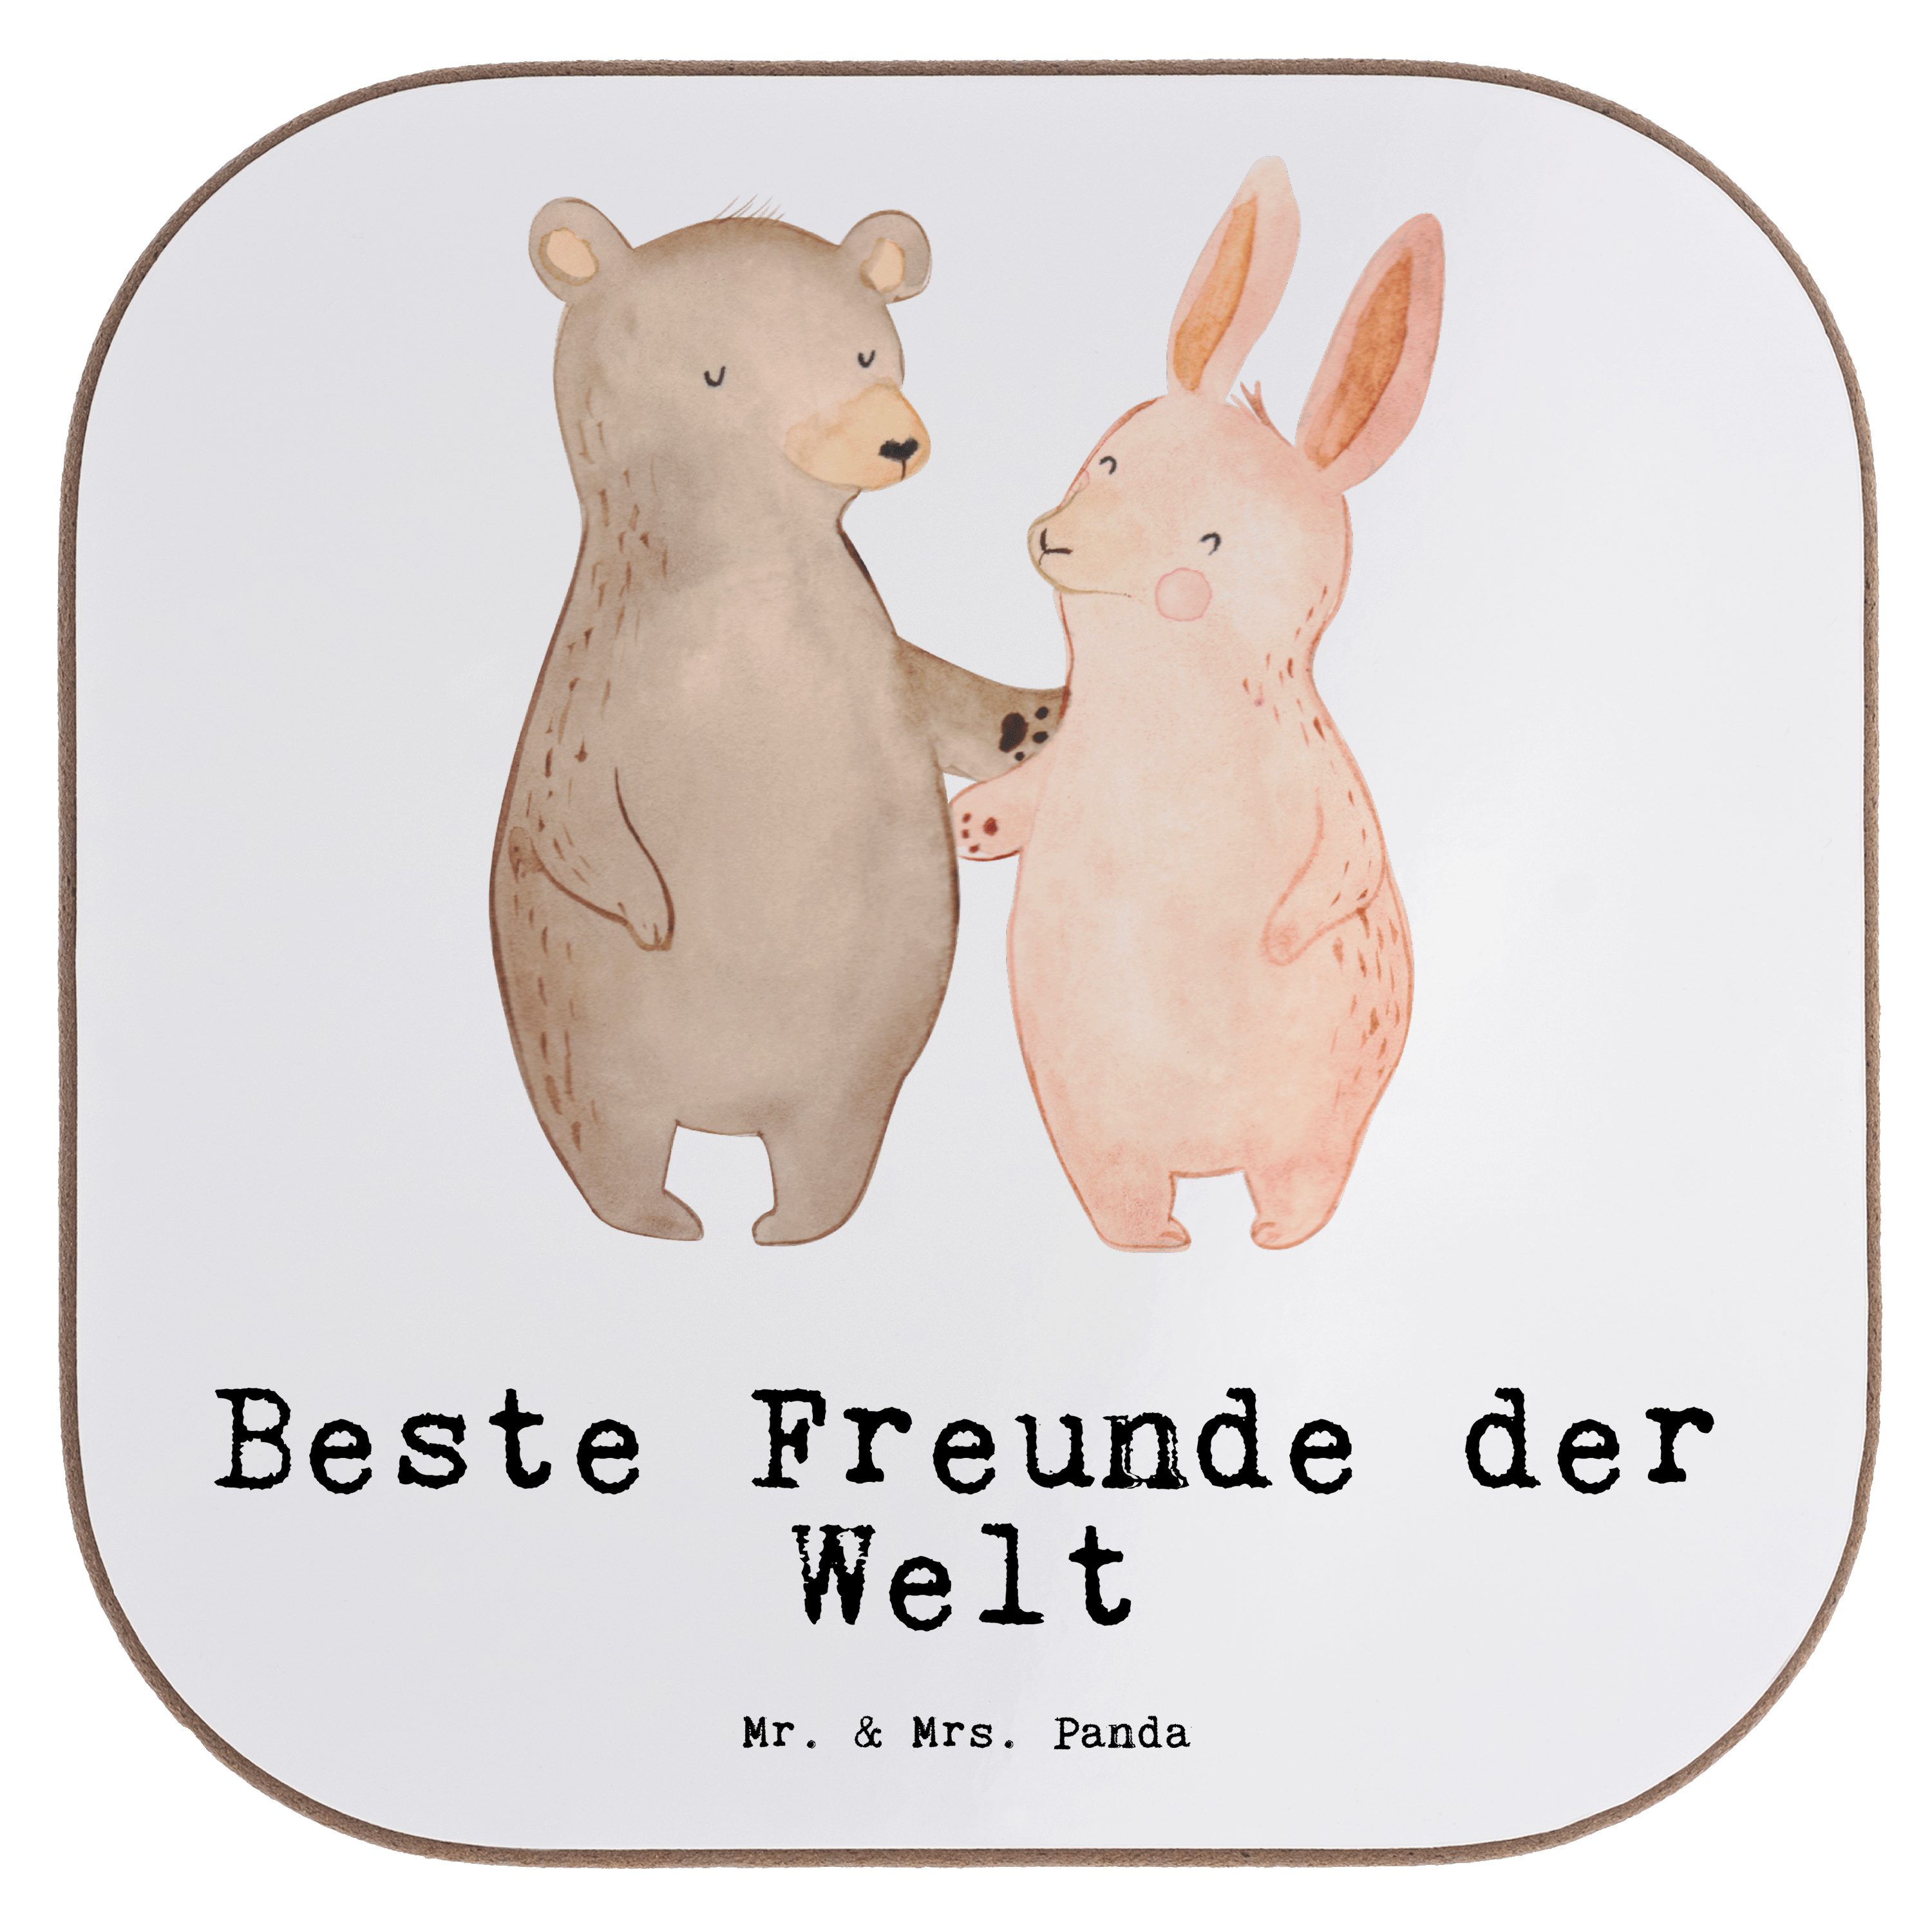 Mr. & Mrs. Panda - Untersetzer, Welt Beste Weiß Schenken, - Freunde der Getränkeuntersetzer Geschenk, Hase 1-tlg